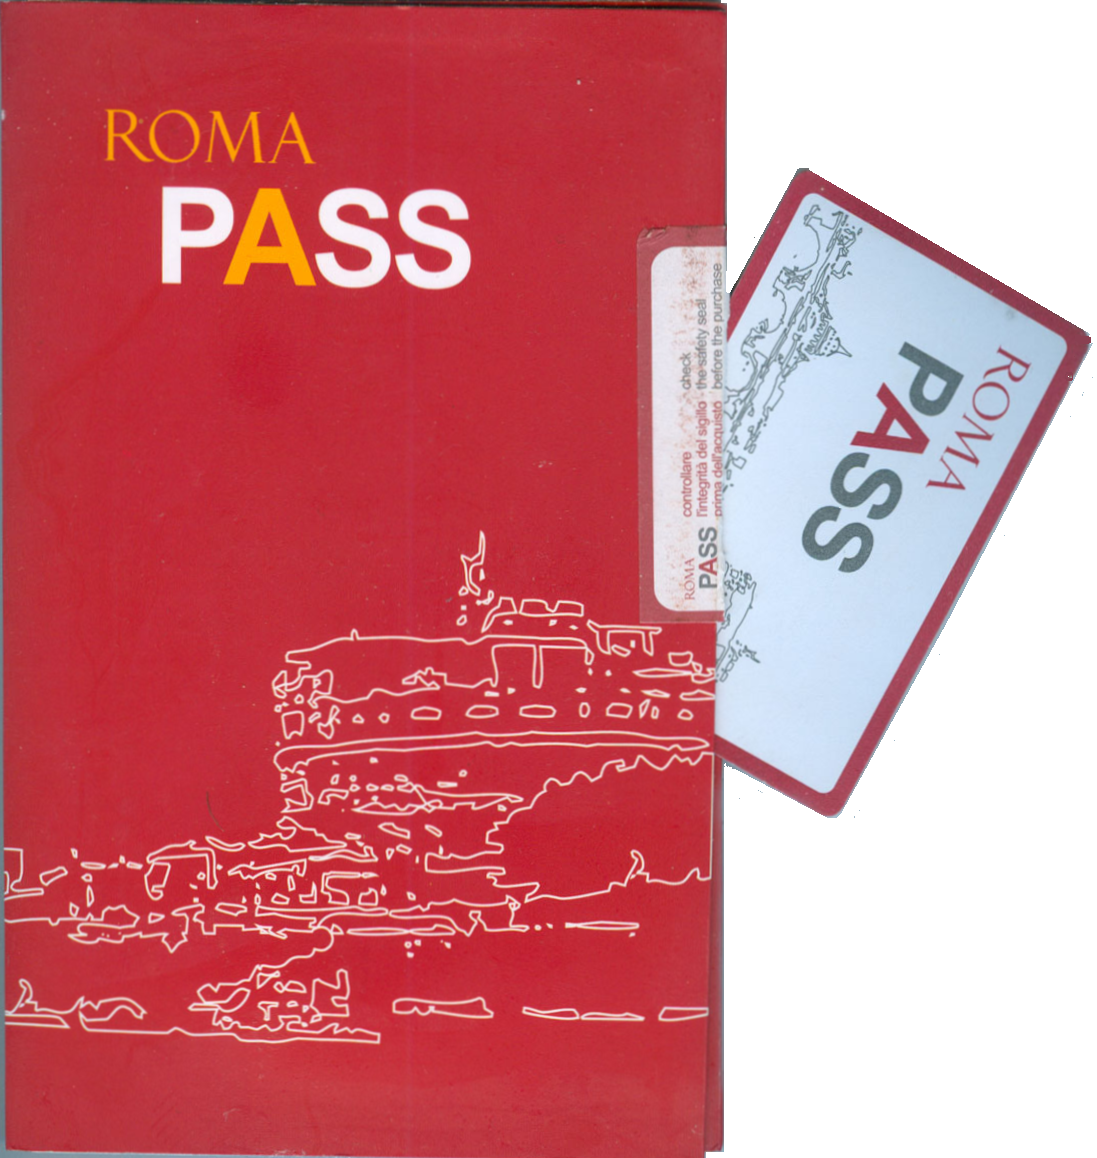 Rma pass